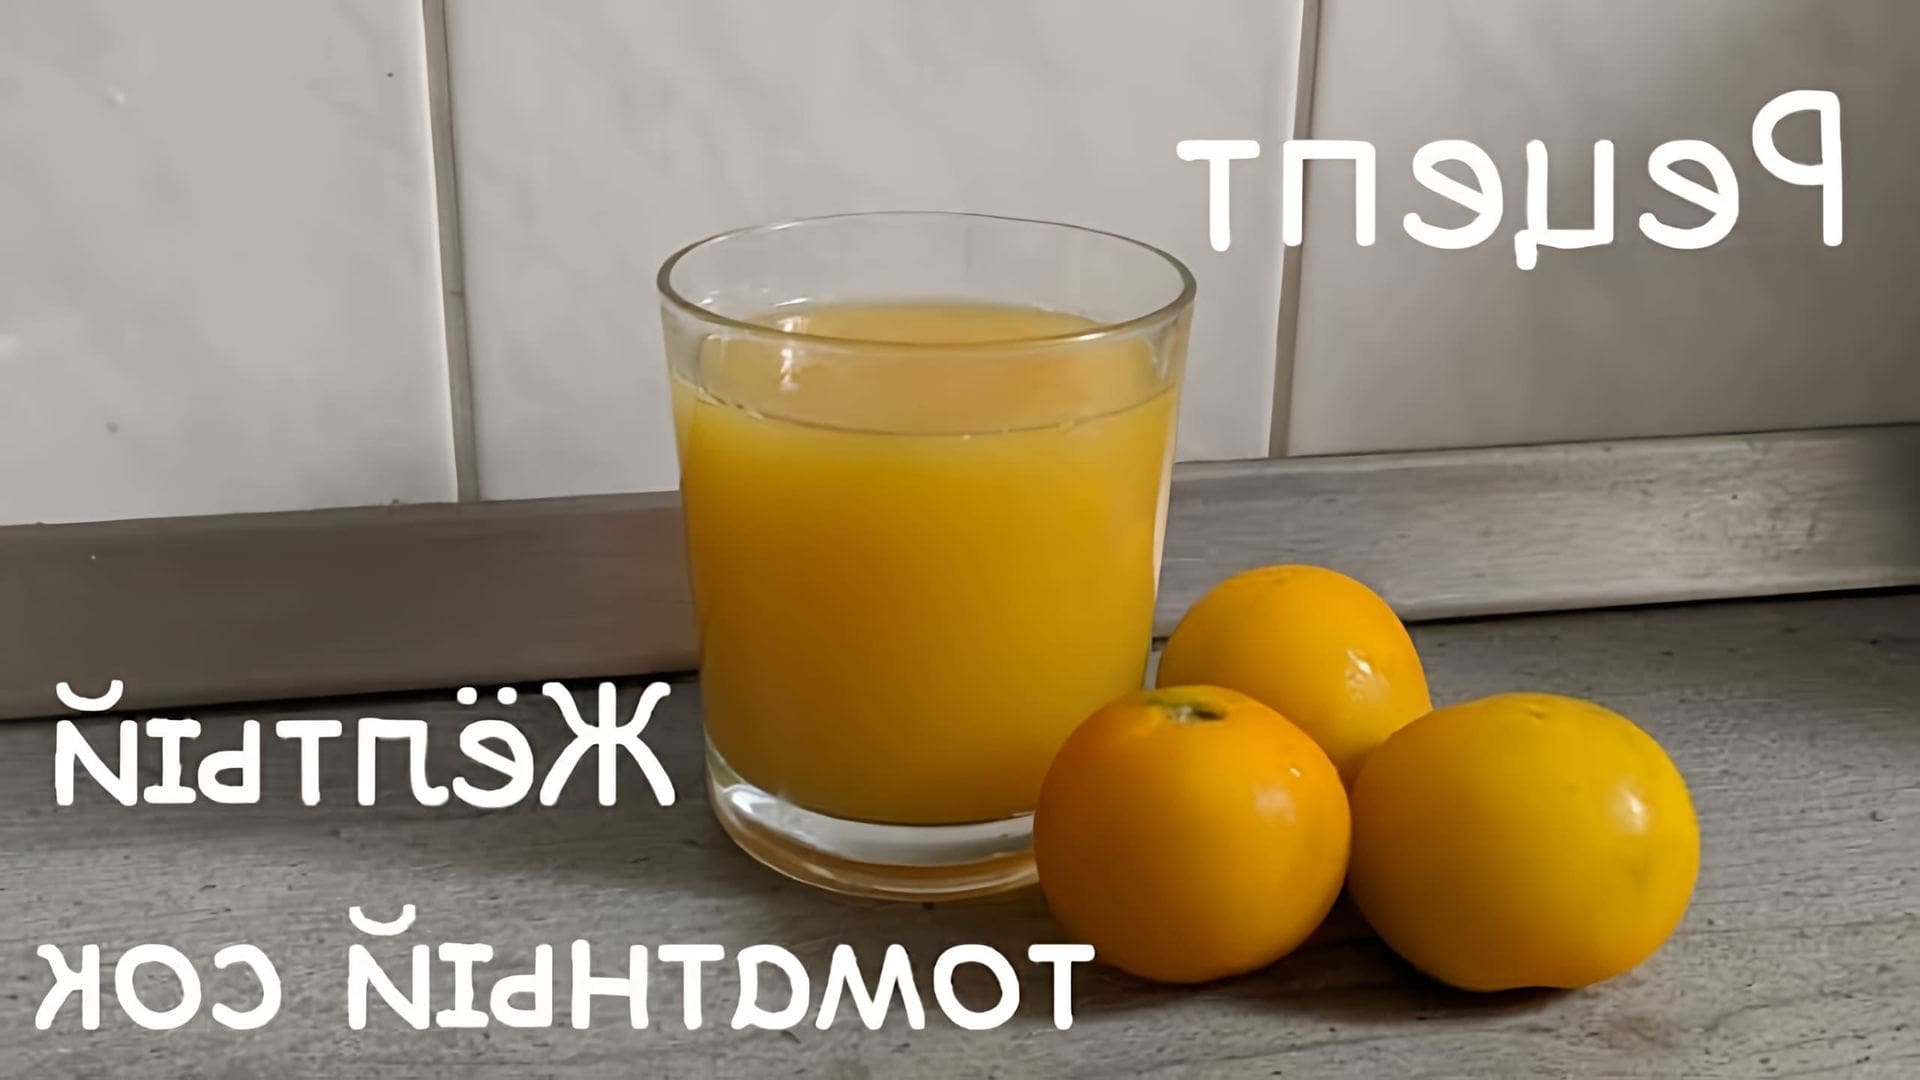 В этом видео демонстрируется процесс приготовления томатного сока из желтых помидоров